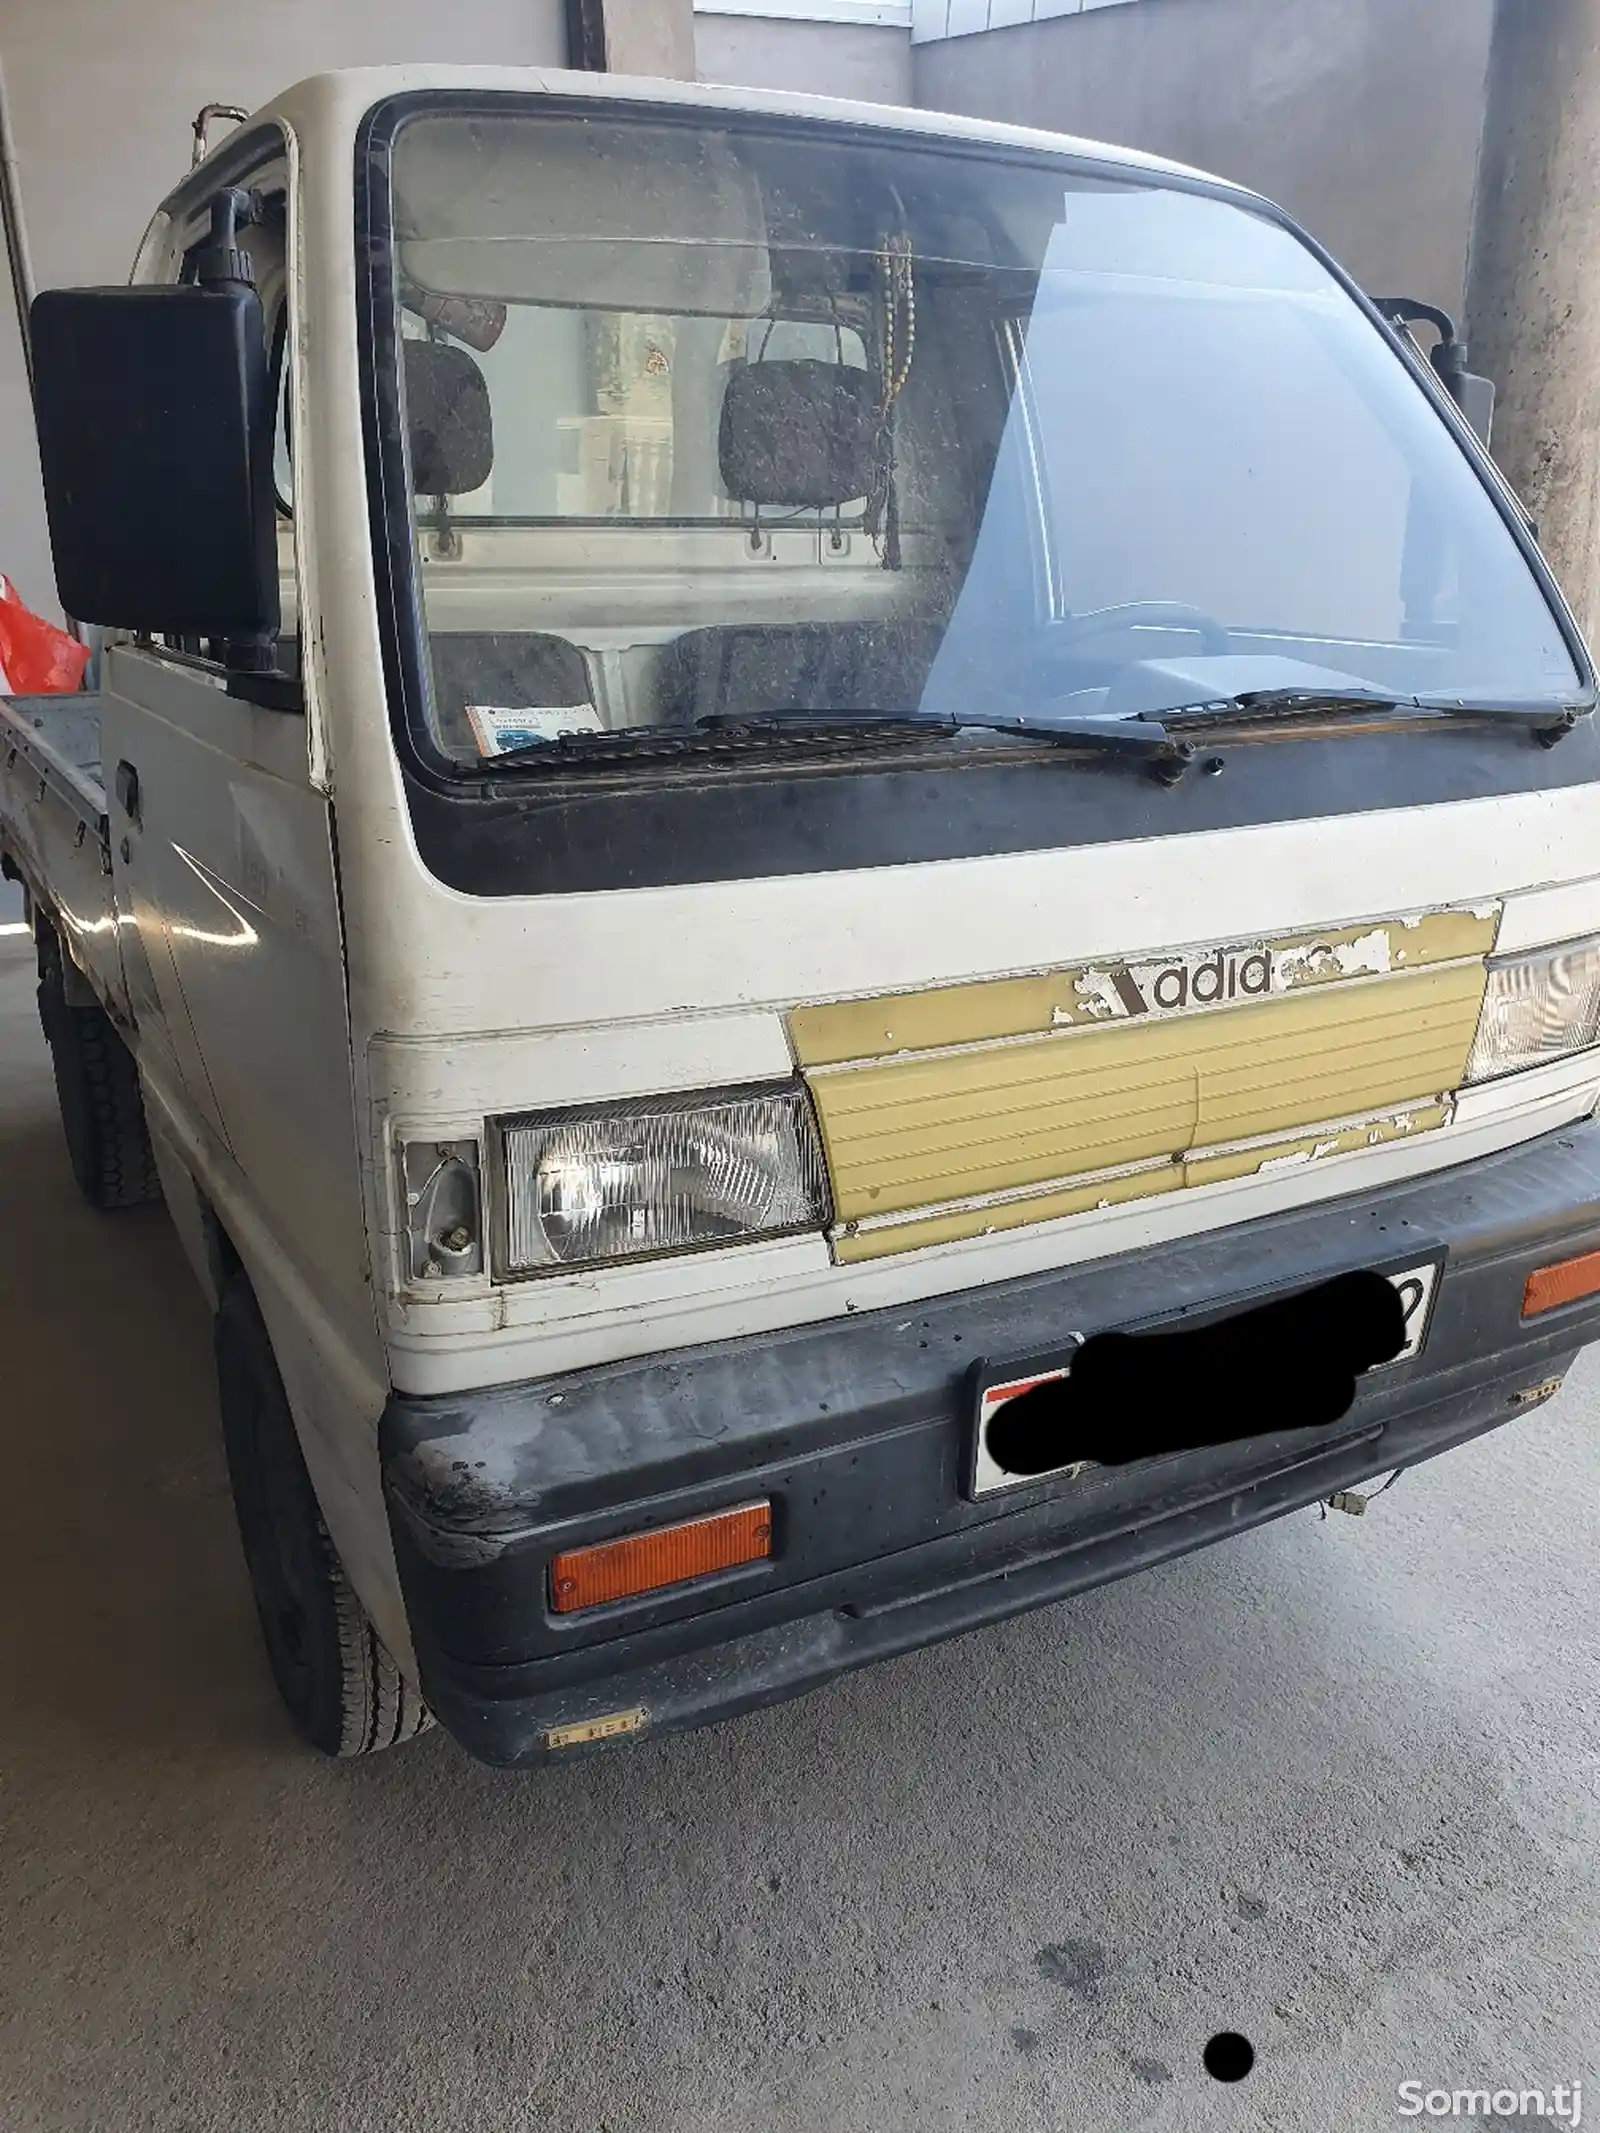 Бортовой автомобиль Daewoo Labo, 1998-2